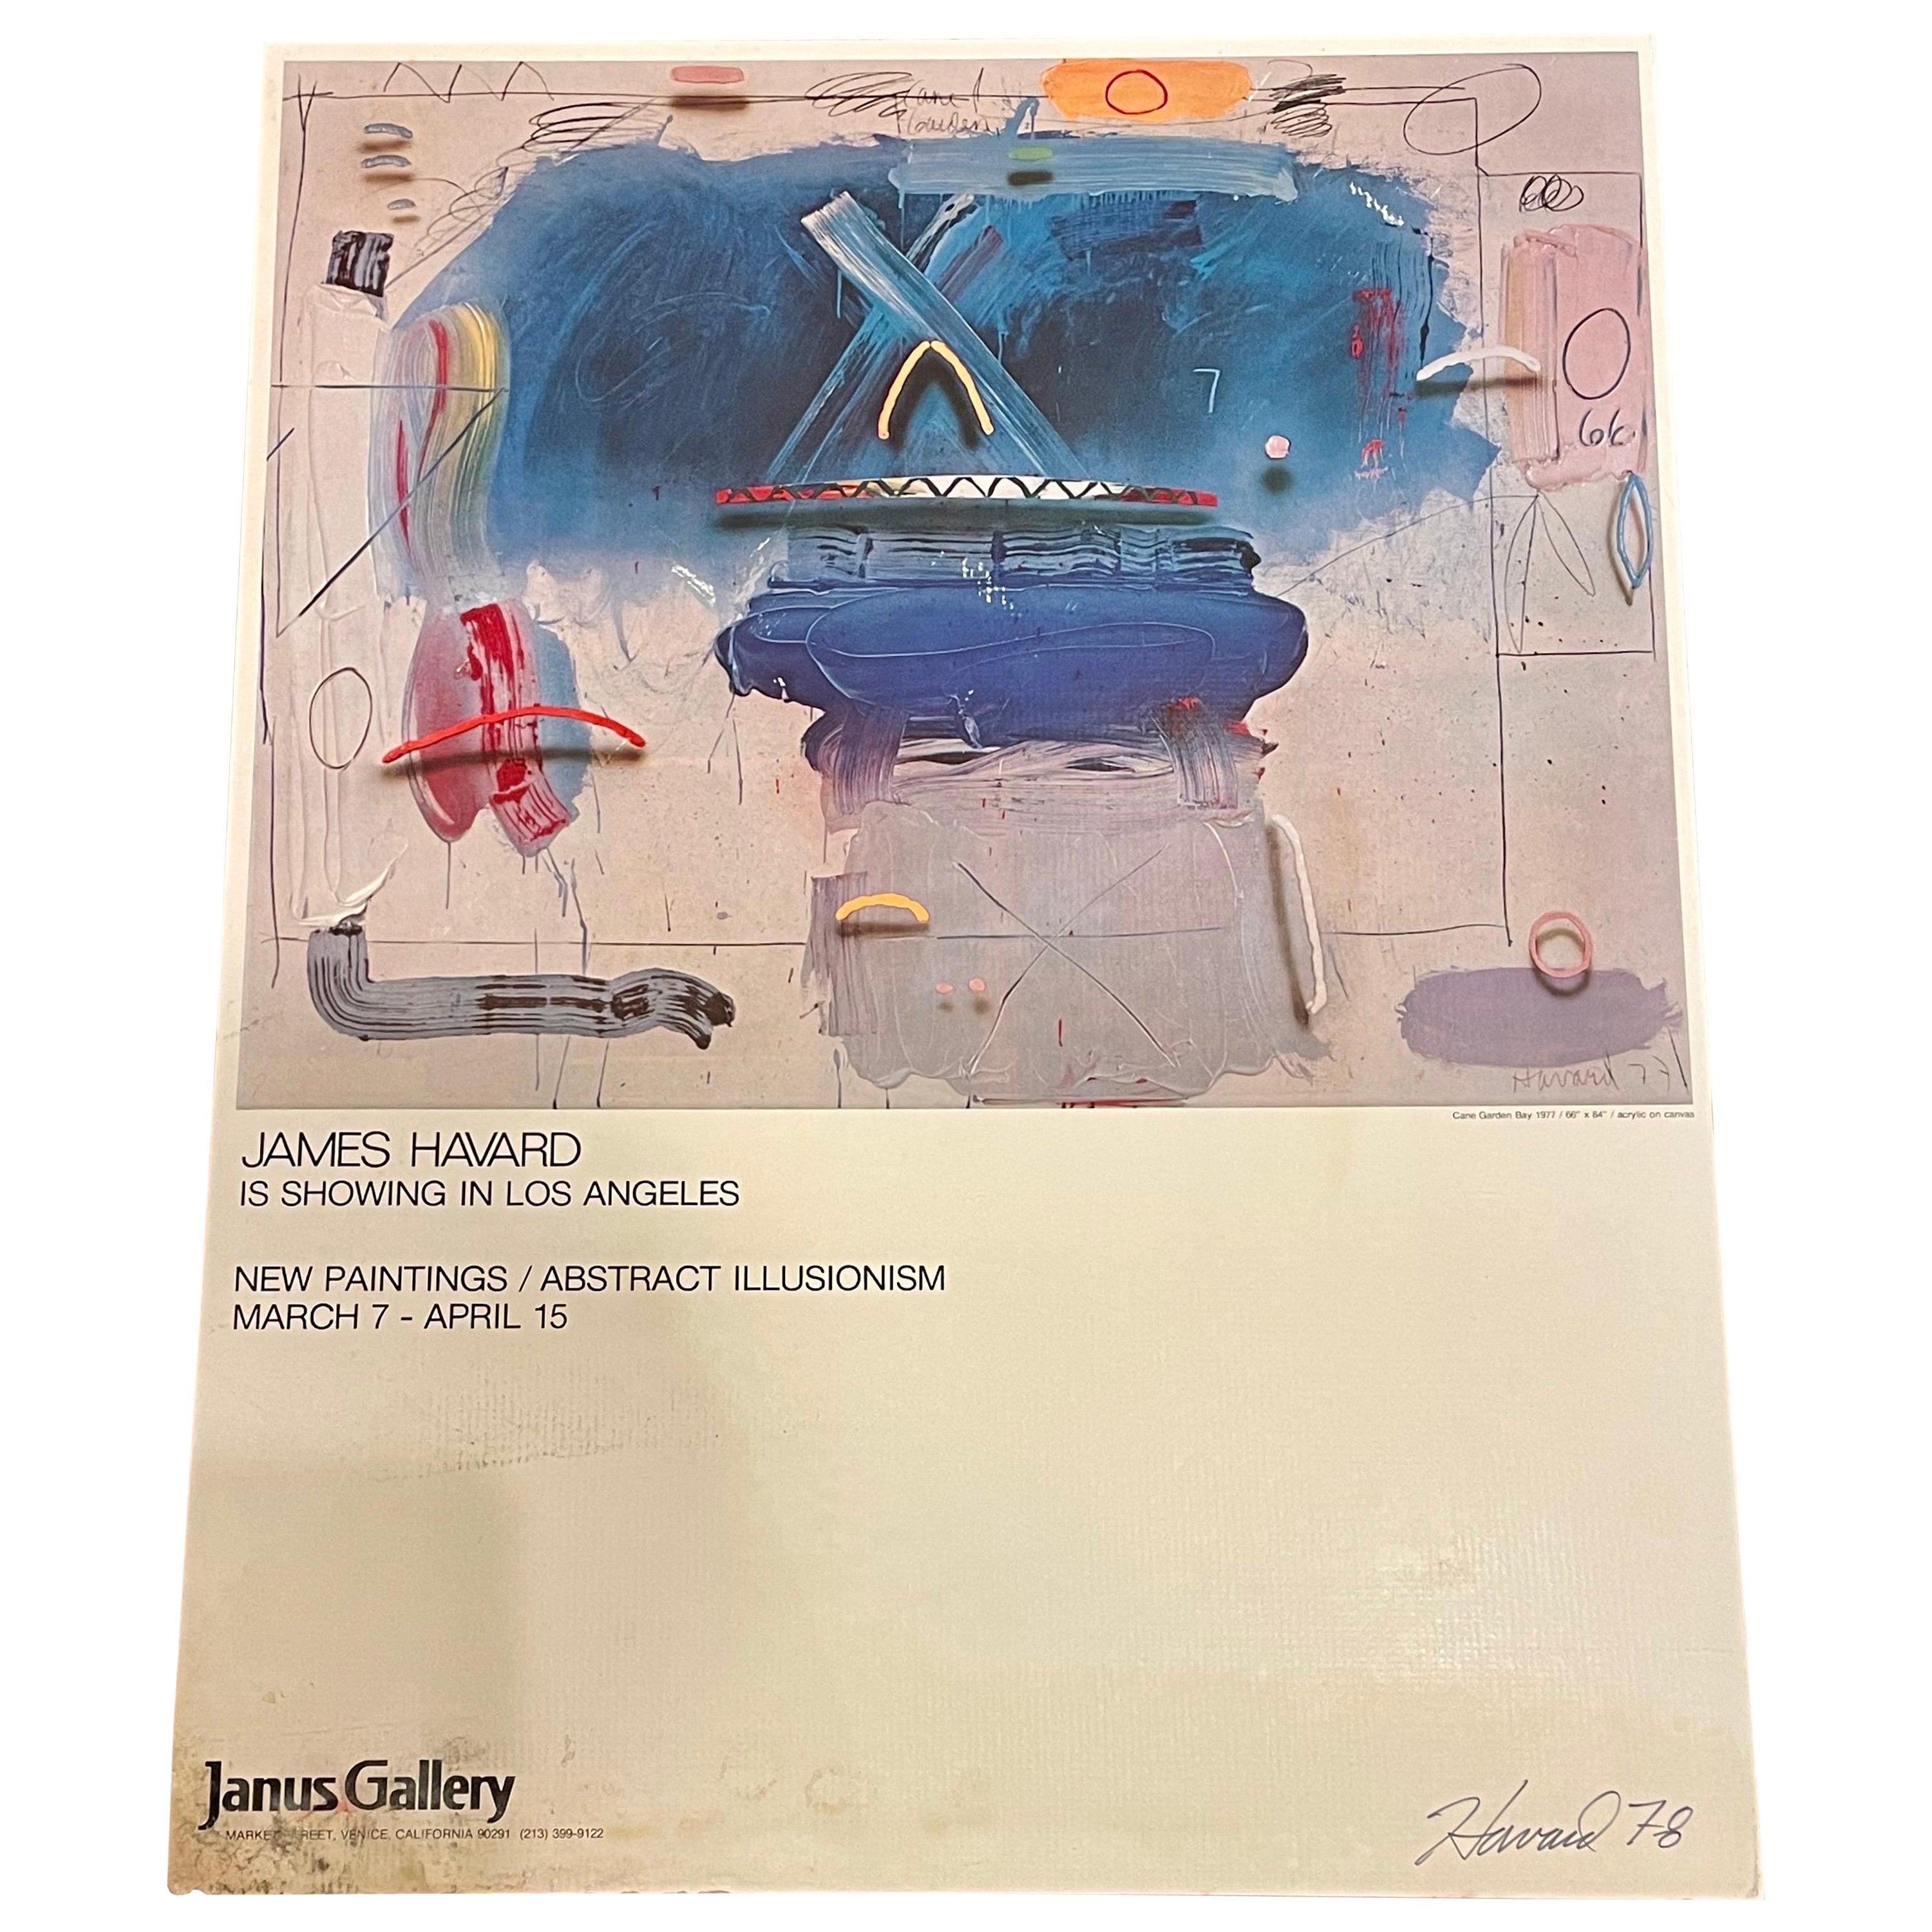 Rare affiche d'exposition originale de la Janus Gallery signée et datée par James Havard